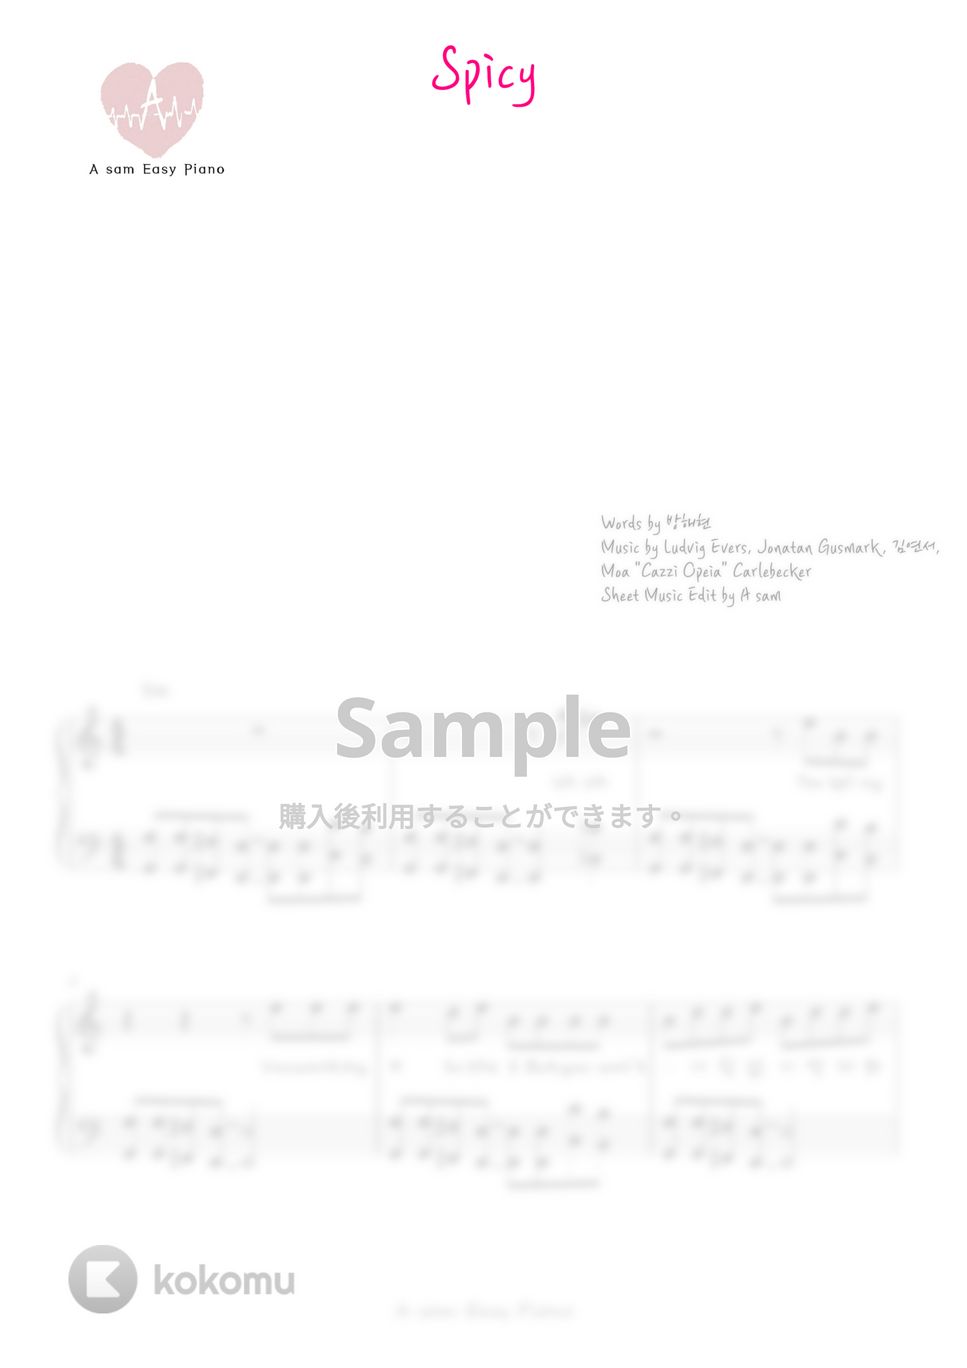 aespa - Spicy (ピアノ両手 / 中級 / 韓国語歌詞付き) by A-sam